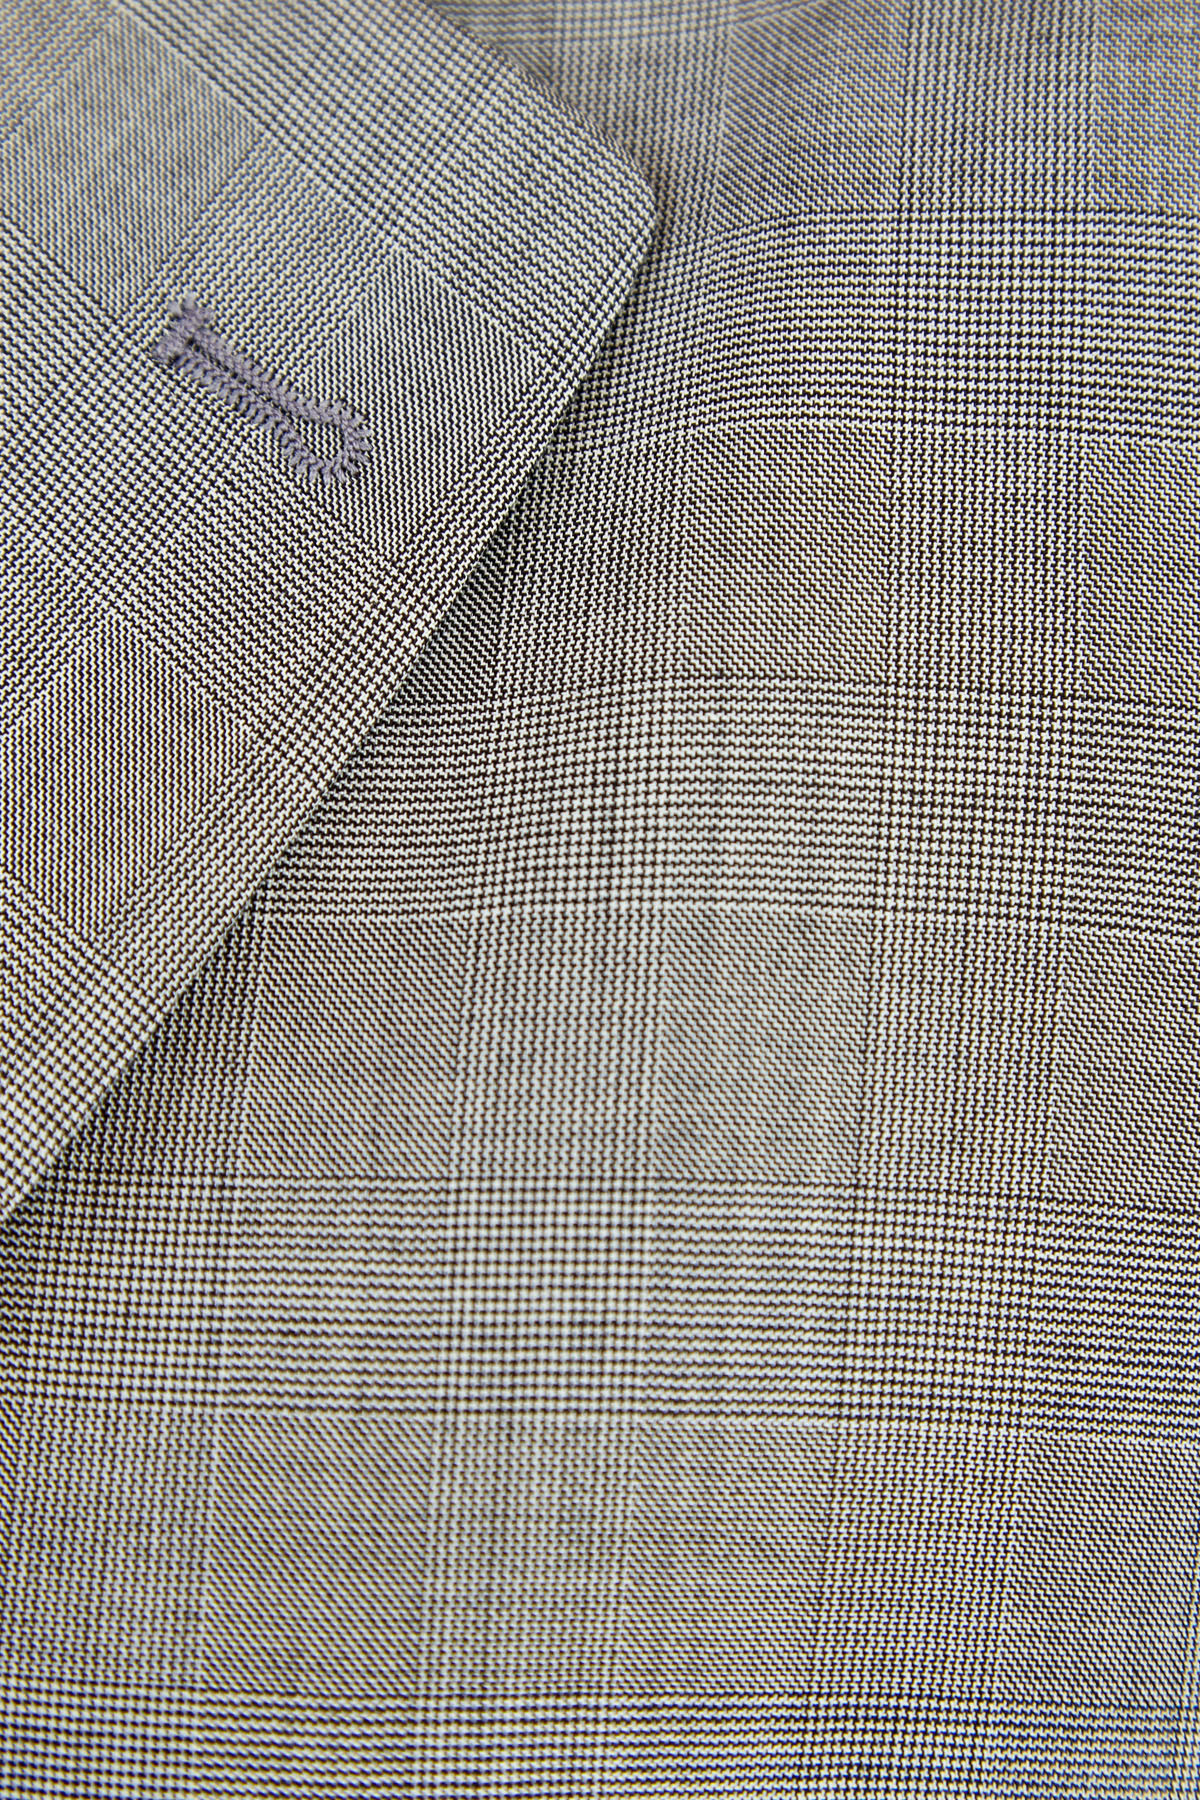 Строгий жакет из шерстяной ткани с принтом в клетку «Принц Уэльский» ERMANNO SCERVINO, цвет серый, размер 44 - фото 6